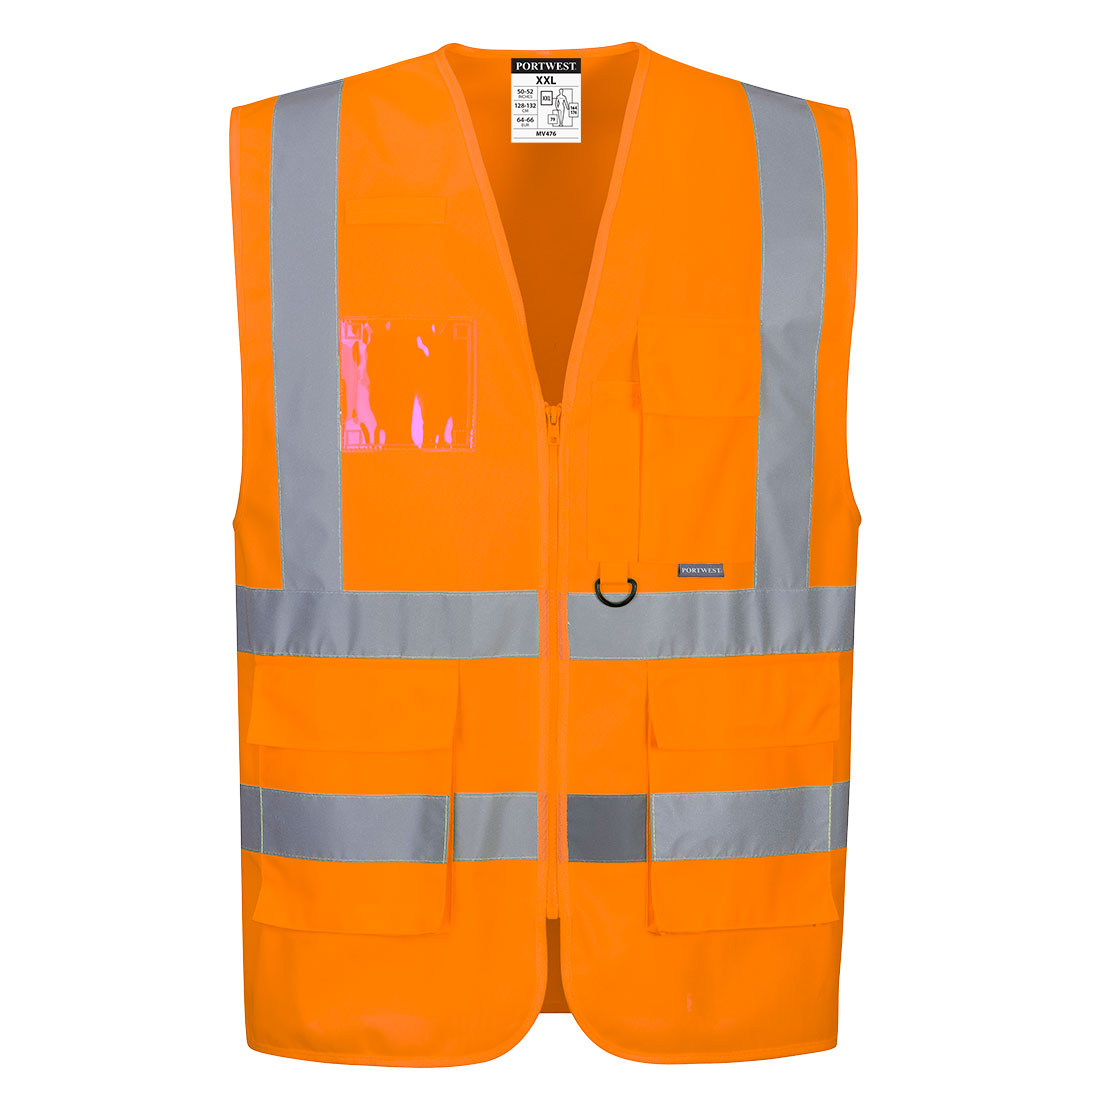 Hi-vis Executive Safety vest Orange - MV476